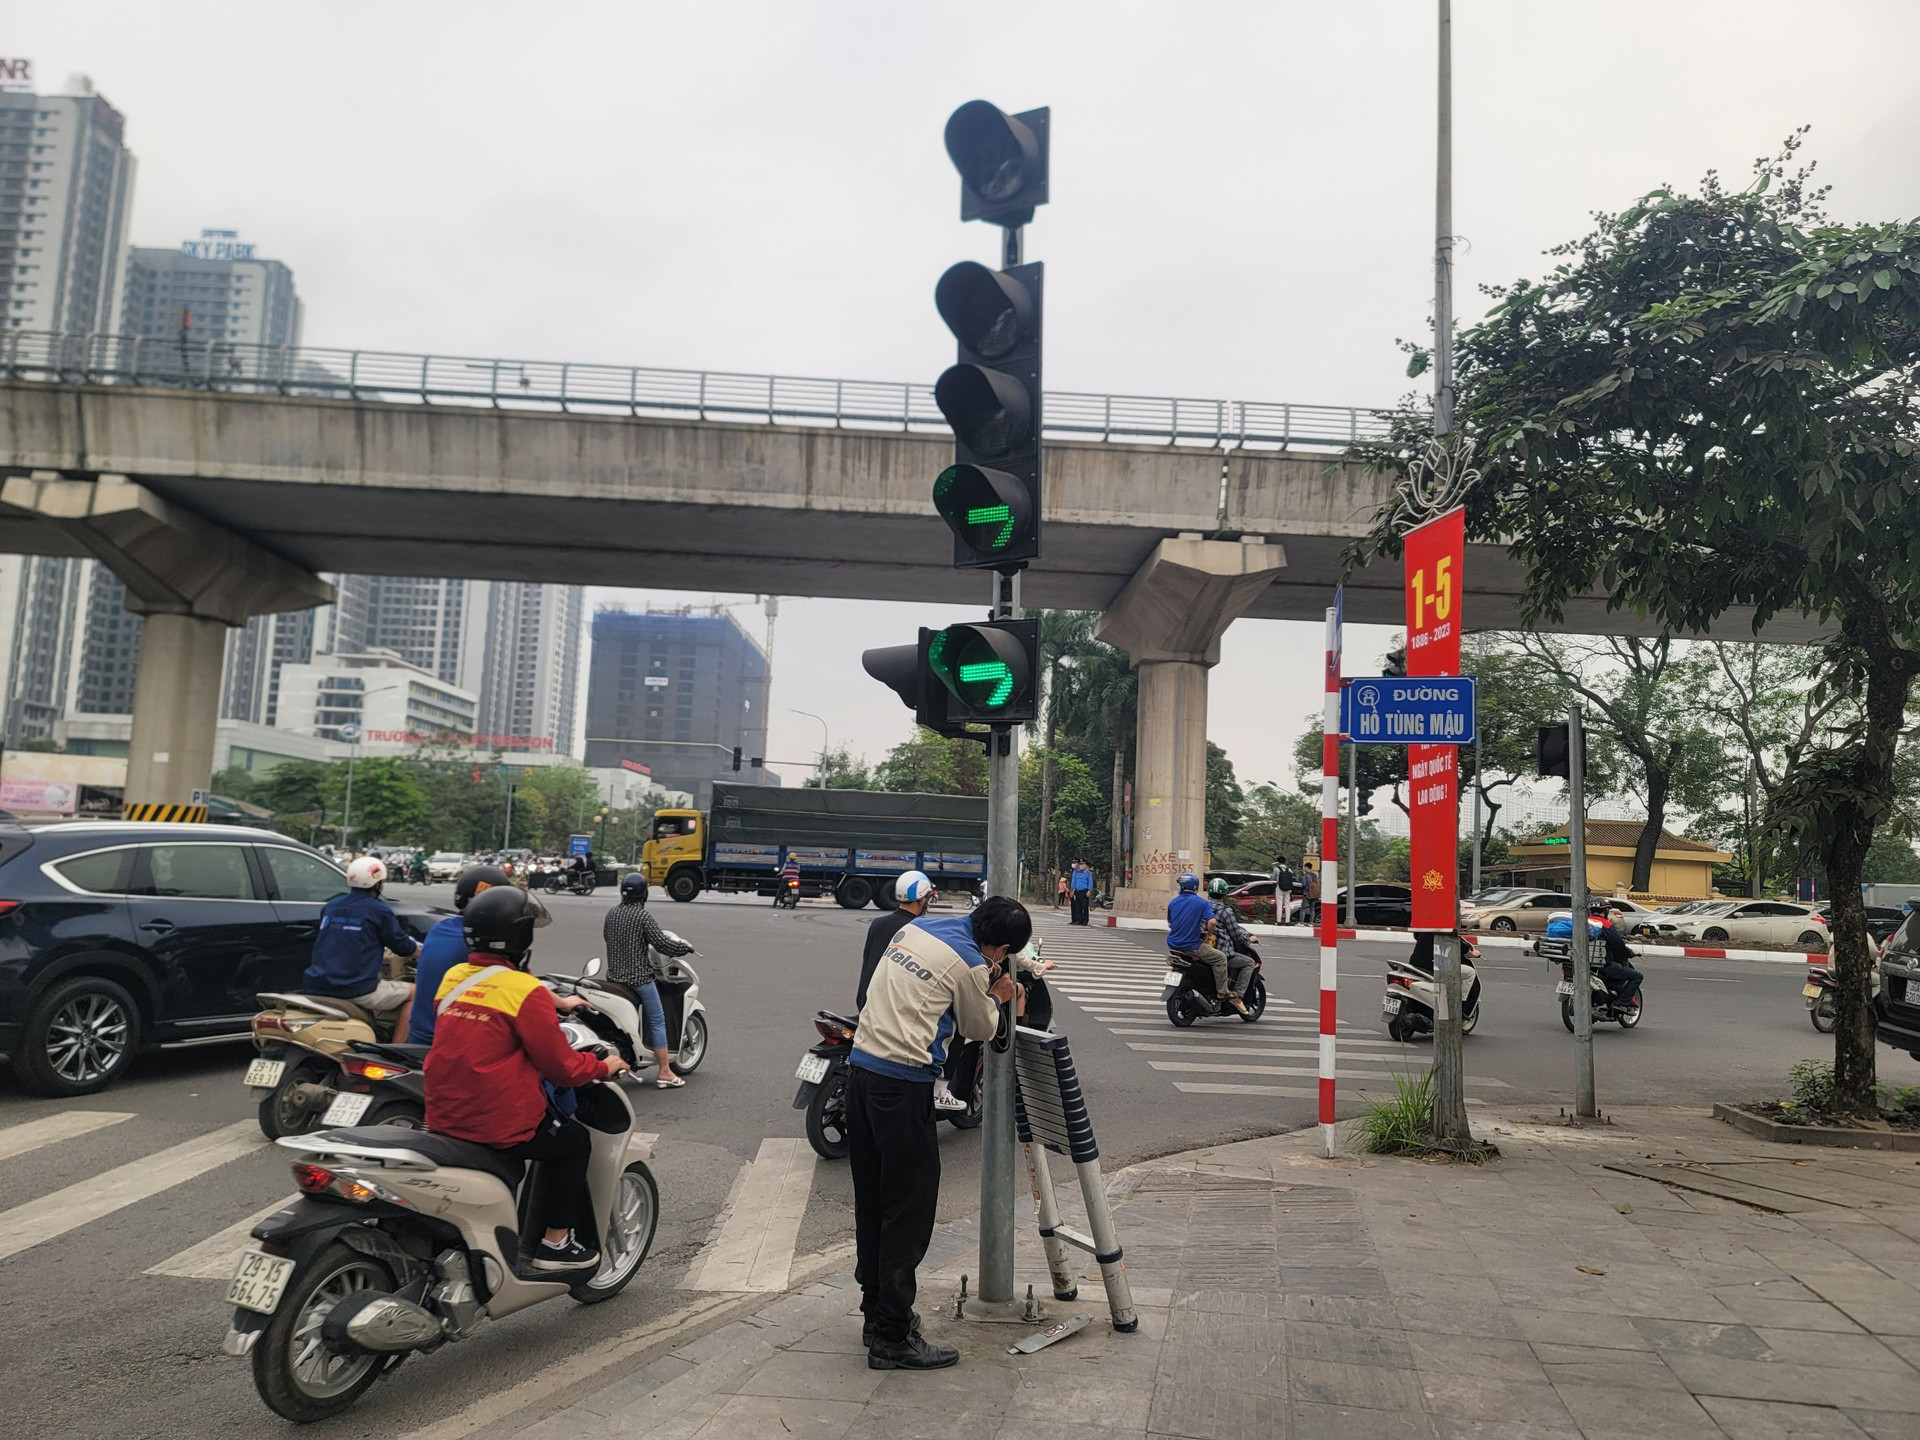 Cán bộ kỹ thuật của Ban Duy tu công trình giao thông TP Hà Nội điều chỉnh lại đèn giao thông tại nút giao. Theo đó sẽ chỉ còn đèn mũi tên rẽ phải màu xanh sáng.